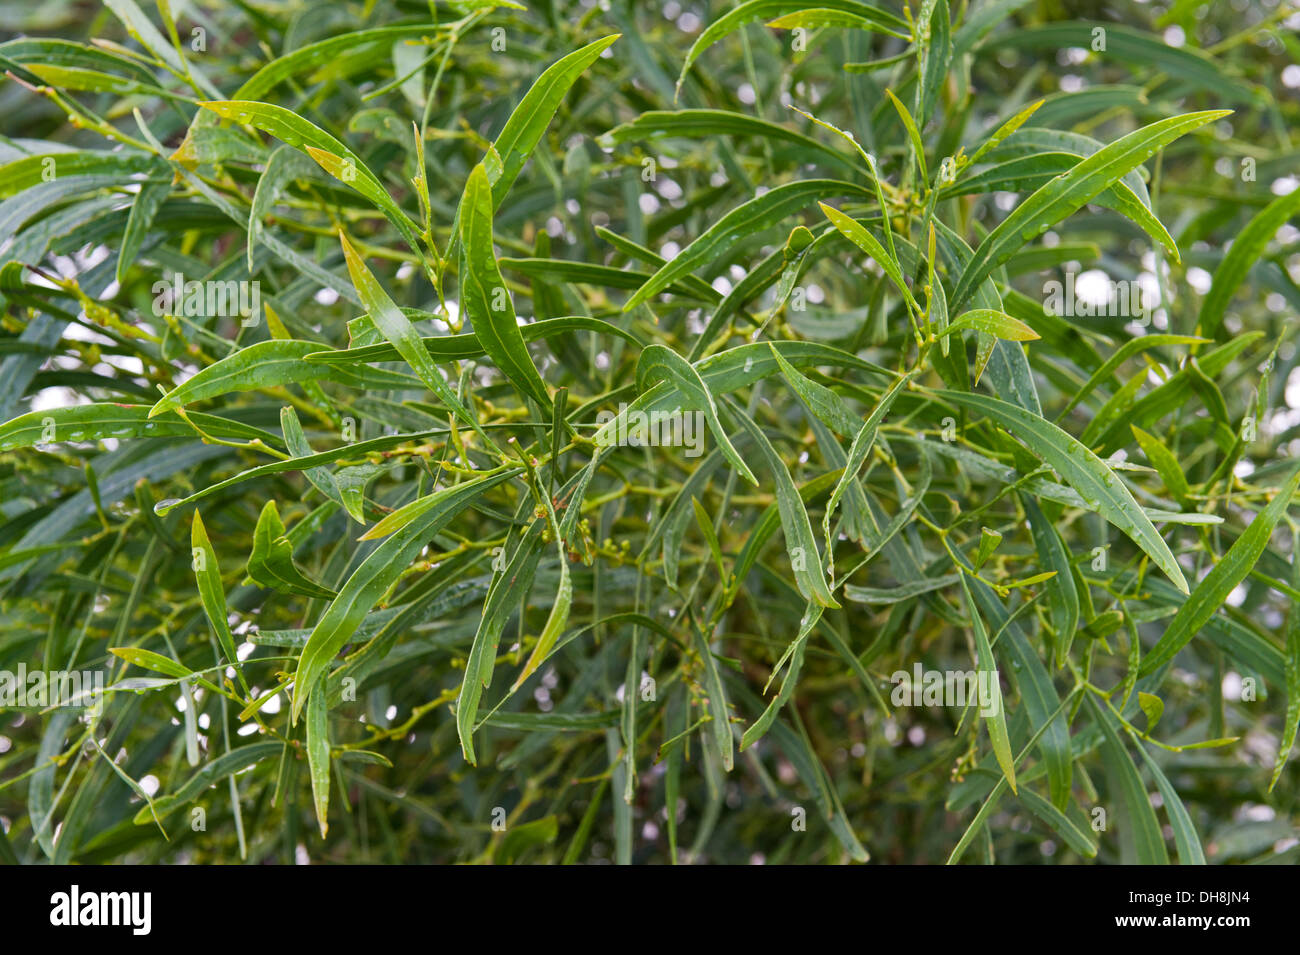 Acacia saligna, un petit arbre originaire de l'Australie, est devenu une espèce envahissante à Cape Town Afrique du Sud Banque D'Images